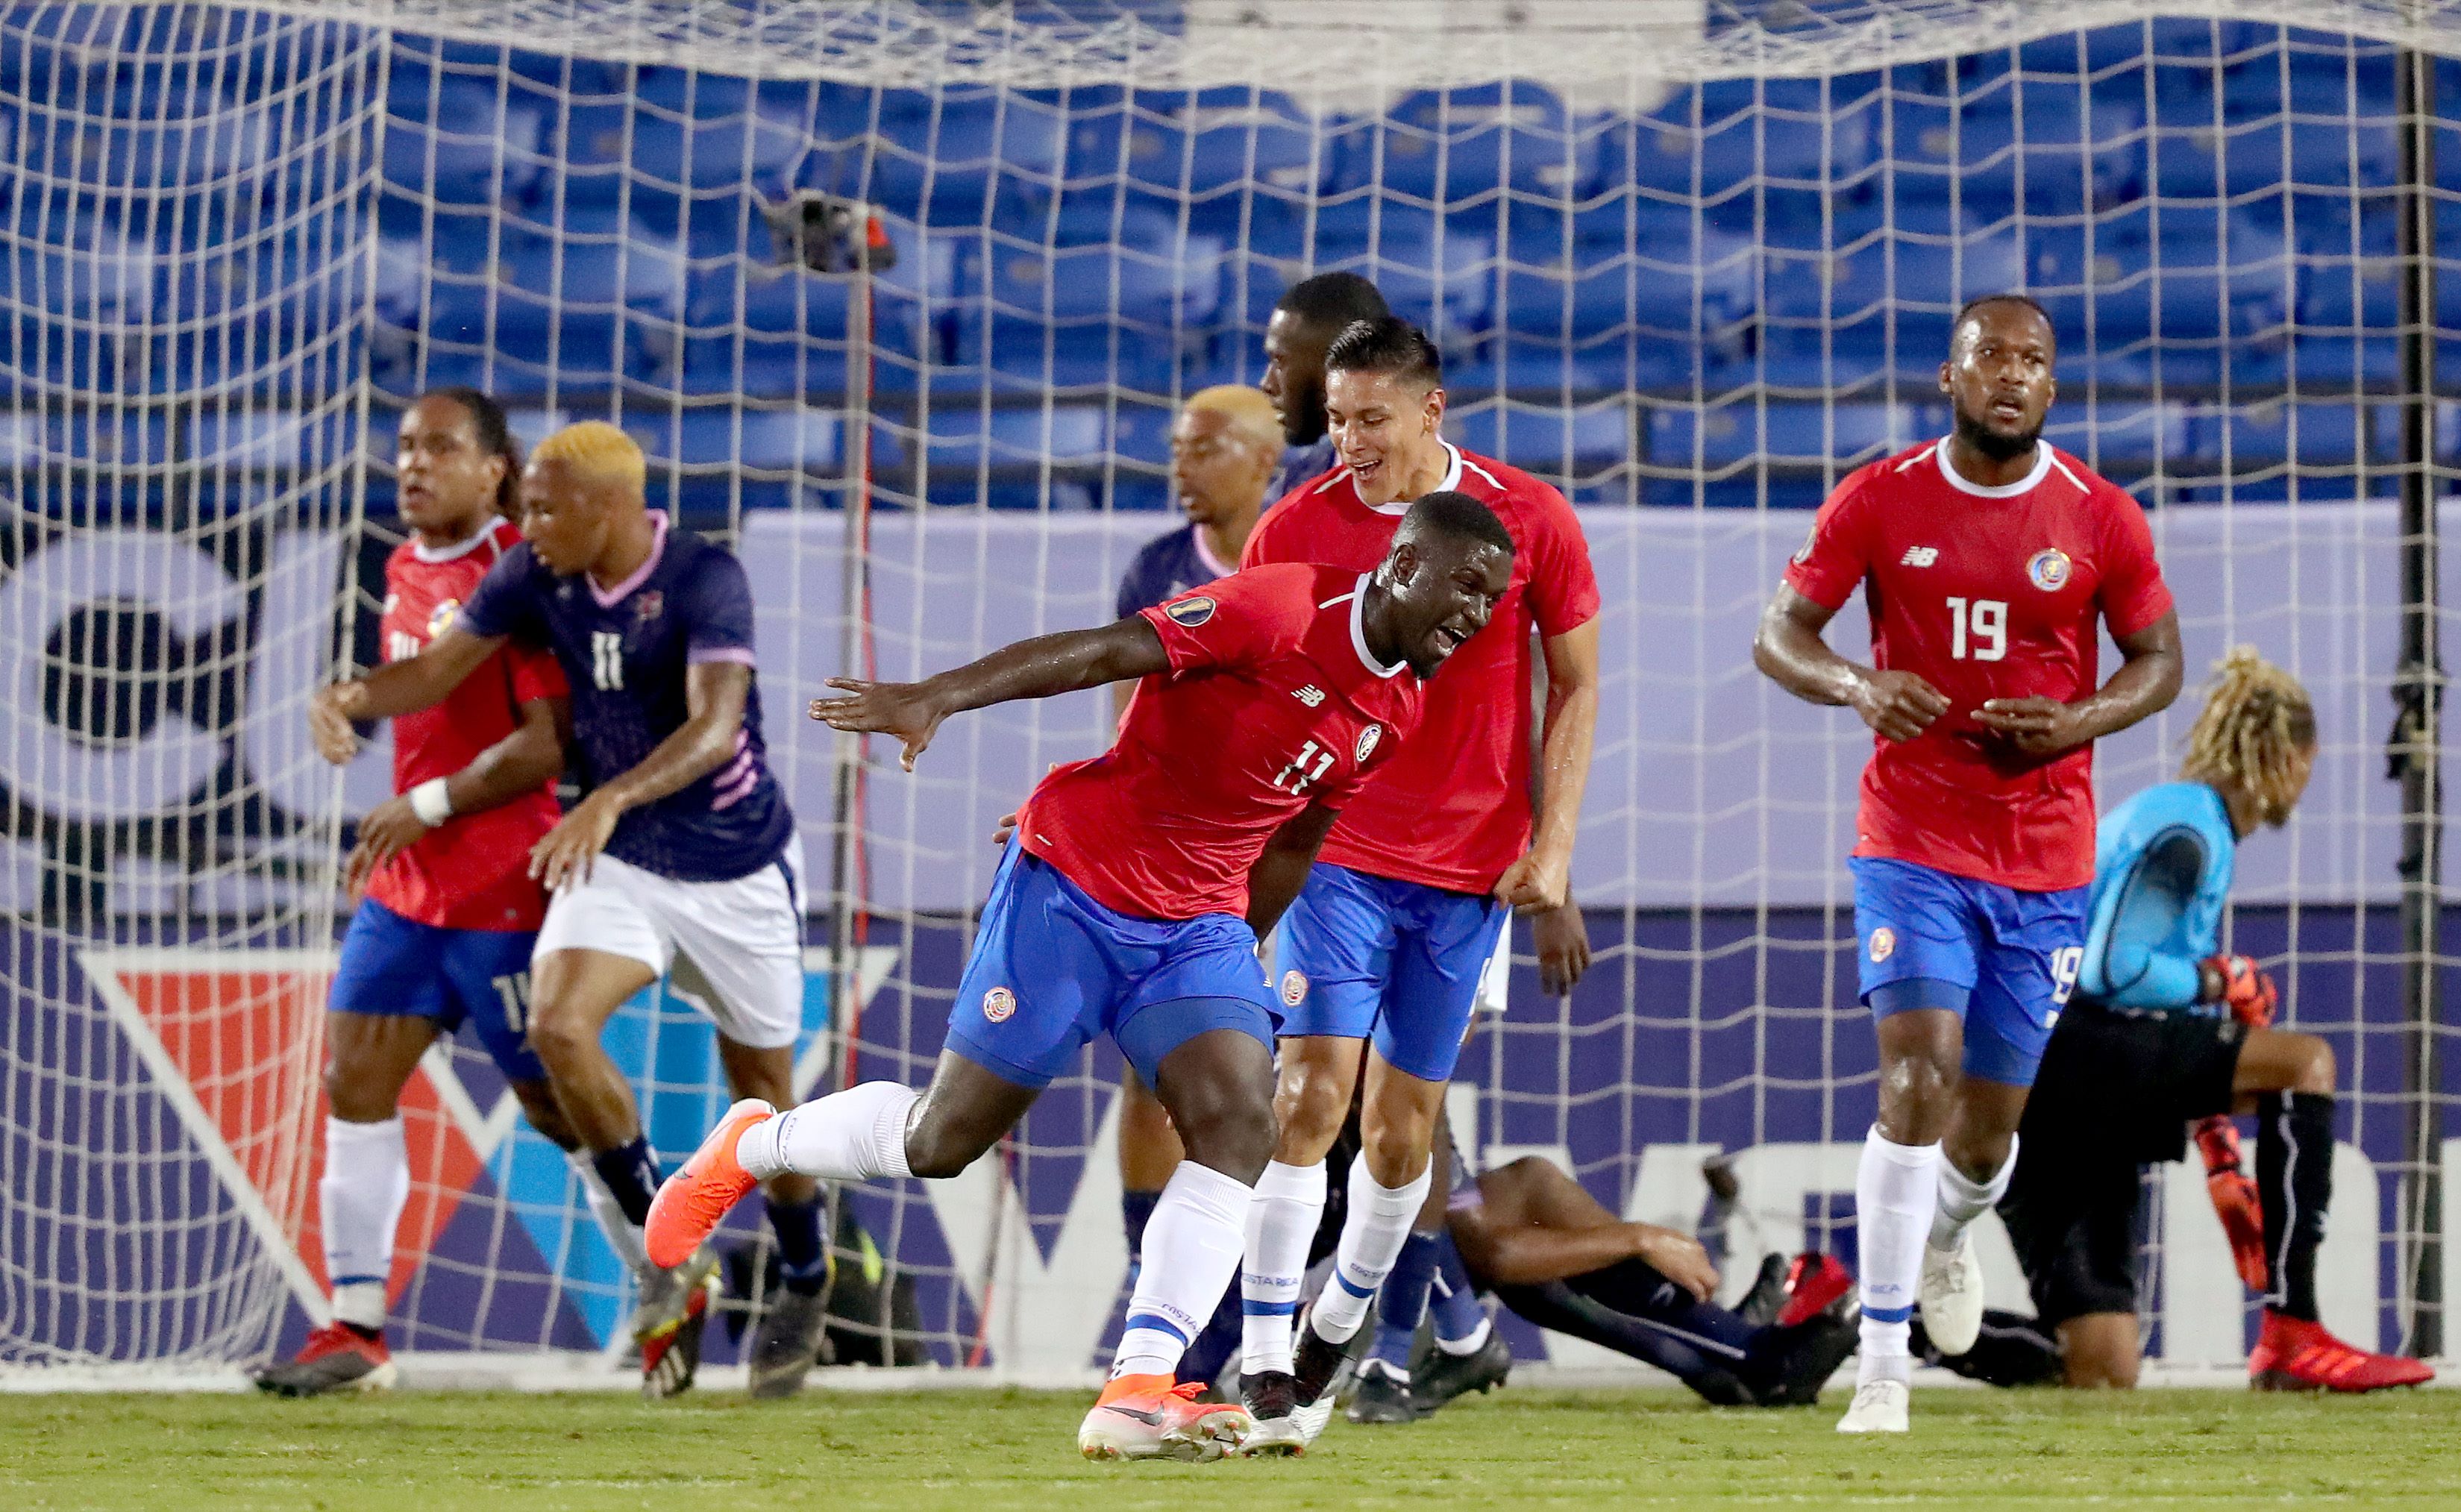  Mayron George de Costa Rica (11) anotó el primer gol de los ticos contra Bermuda. (Foto Prensa Libre: AFP)